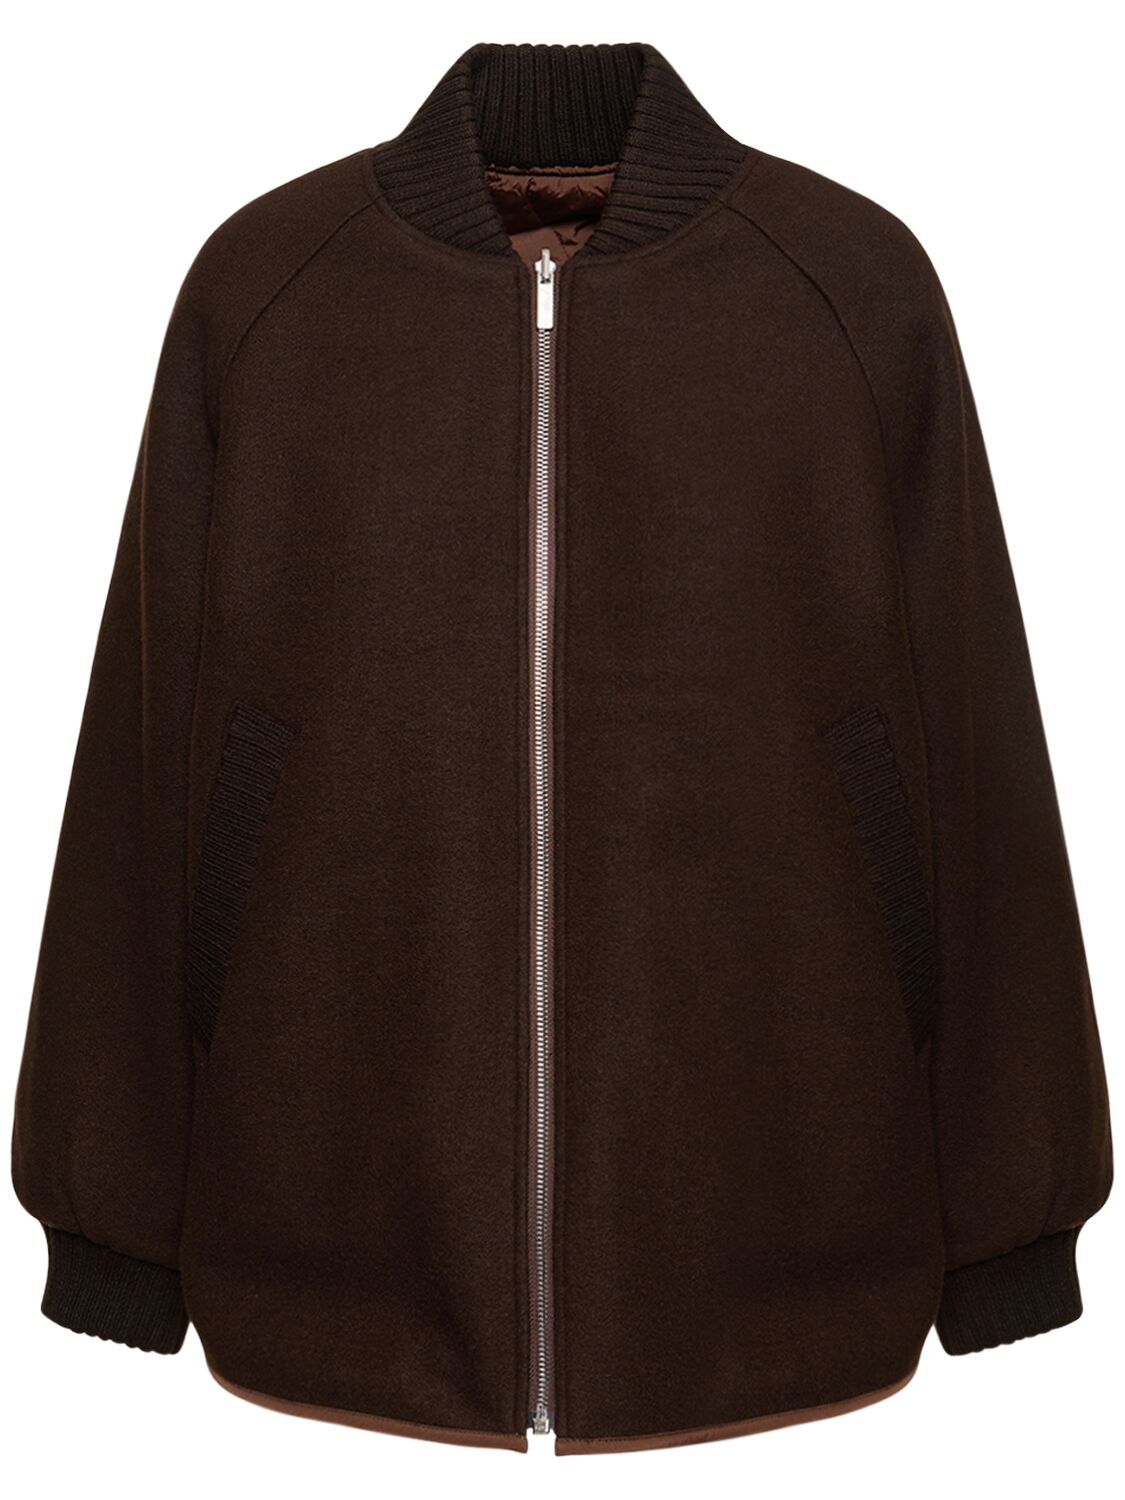 Varley Reno Reversible Quilted Jacket In Brown